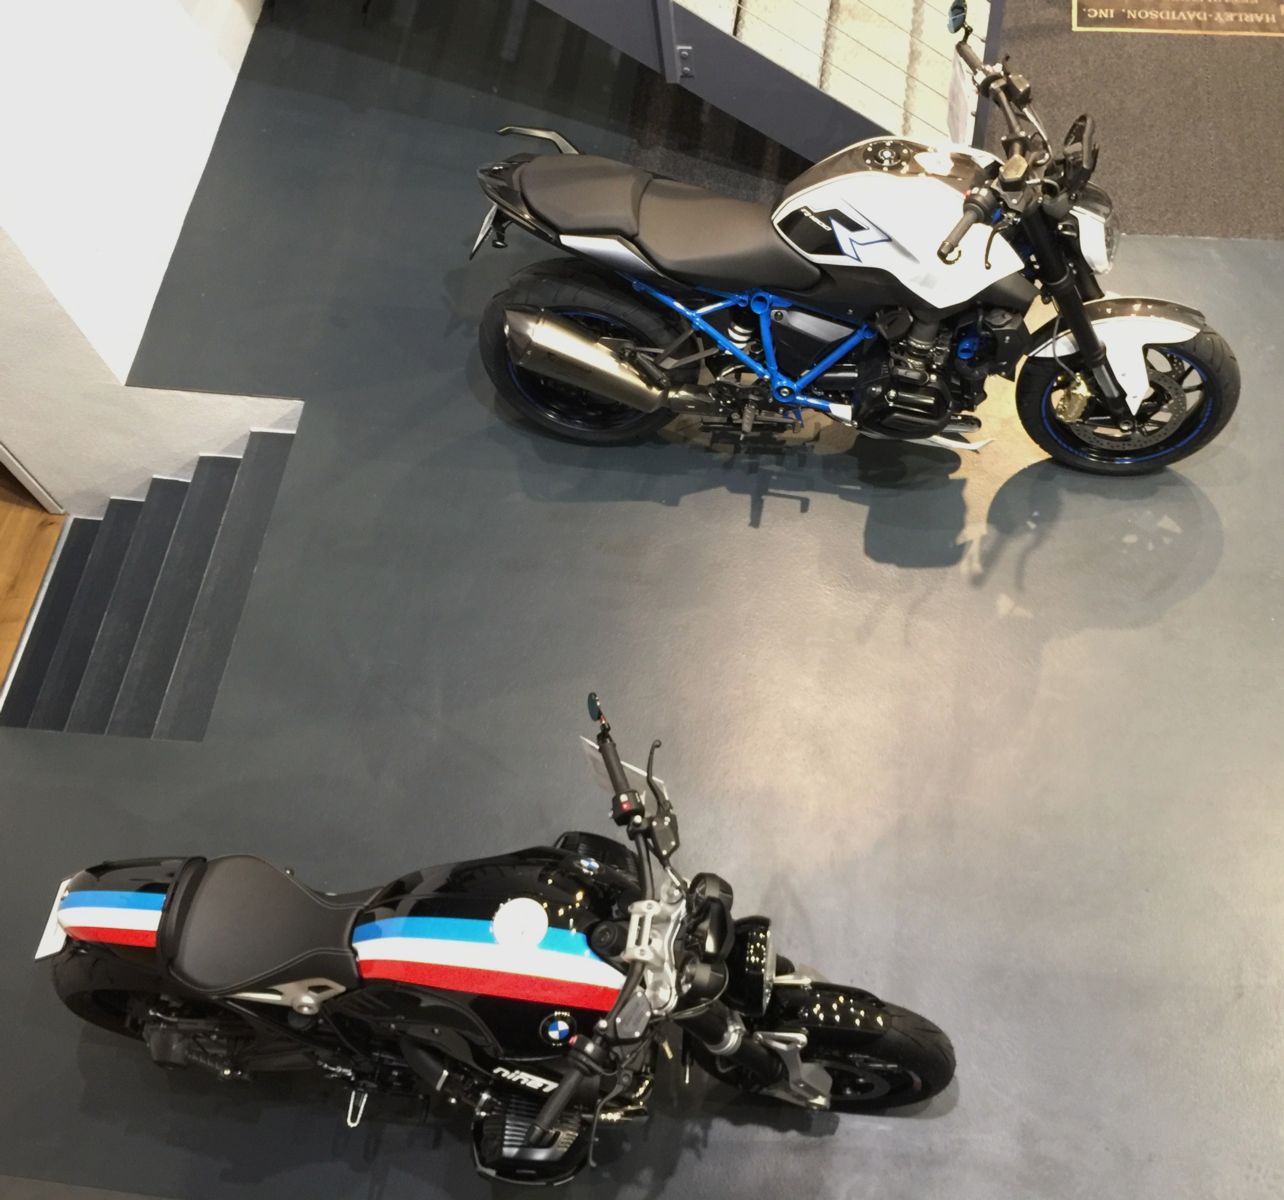 ガレージハウス計画 No.1 「BMW MOTORRAD のある生活」